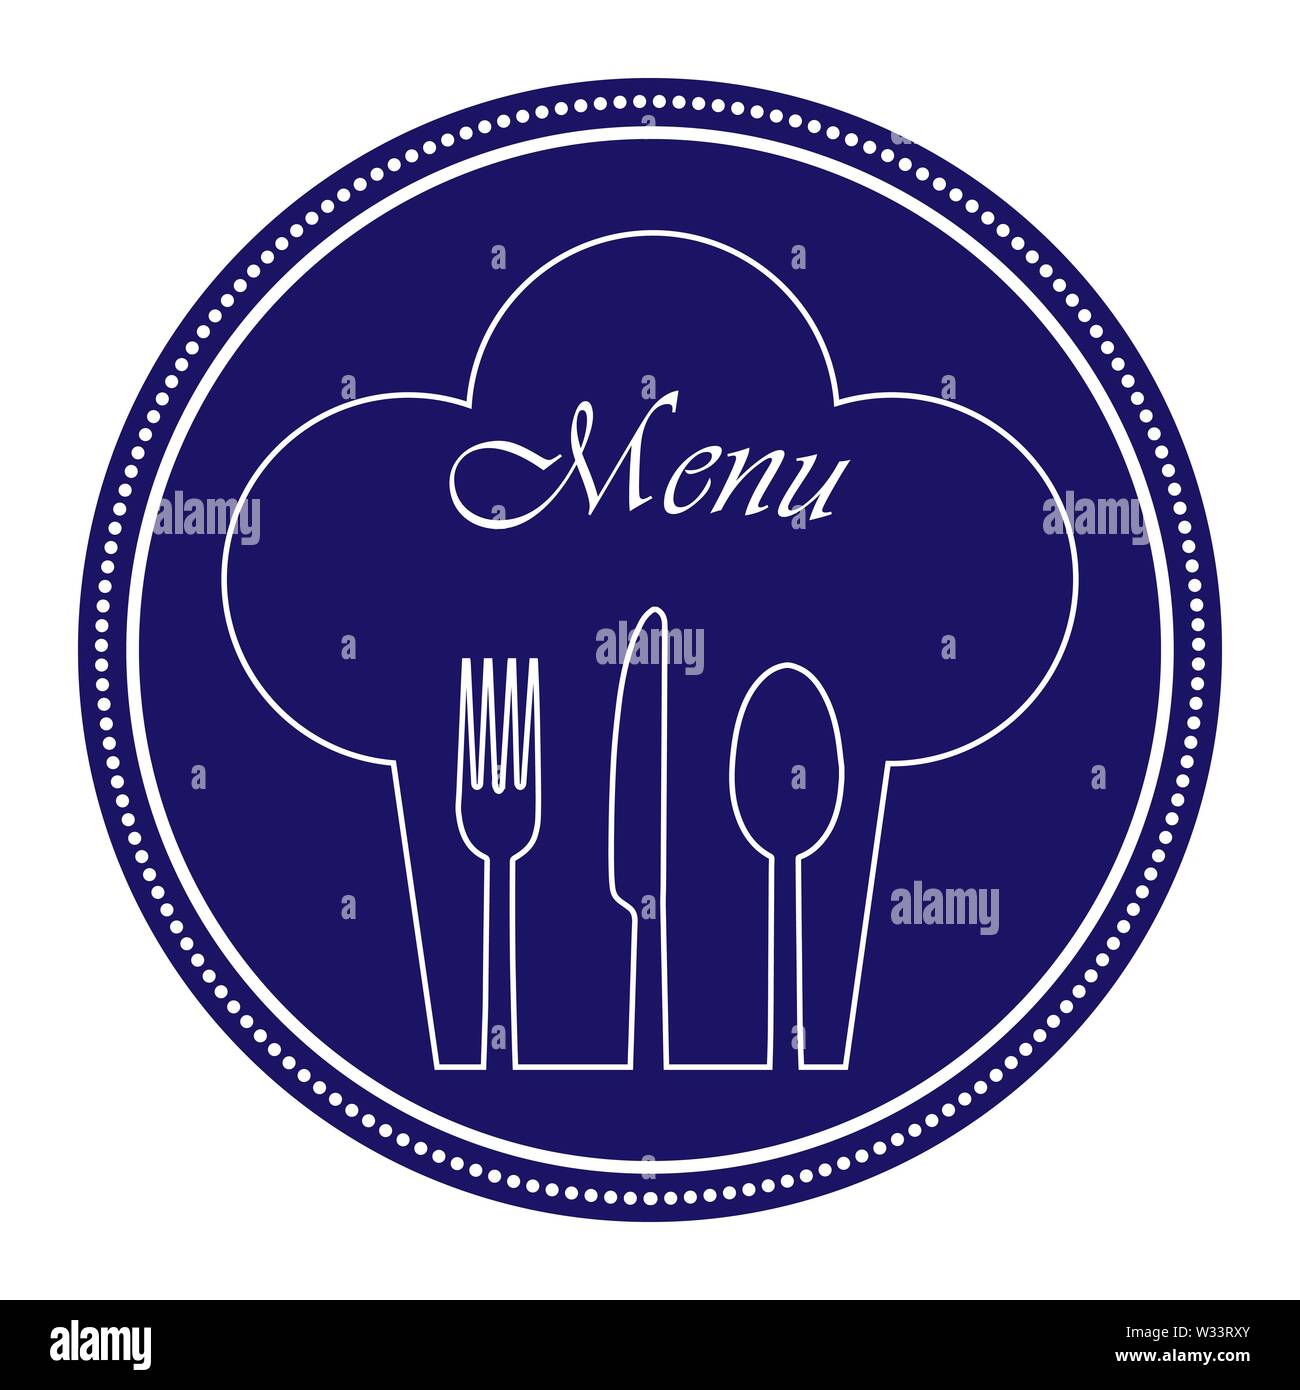 Vorlage für die Gestaltung und Dekoration der Speisekarte im Restaurant, Catering oder Gastro Service, flache Bauform Stock Vektor